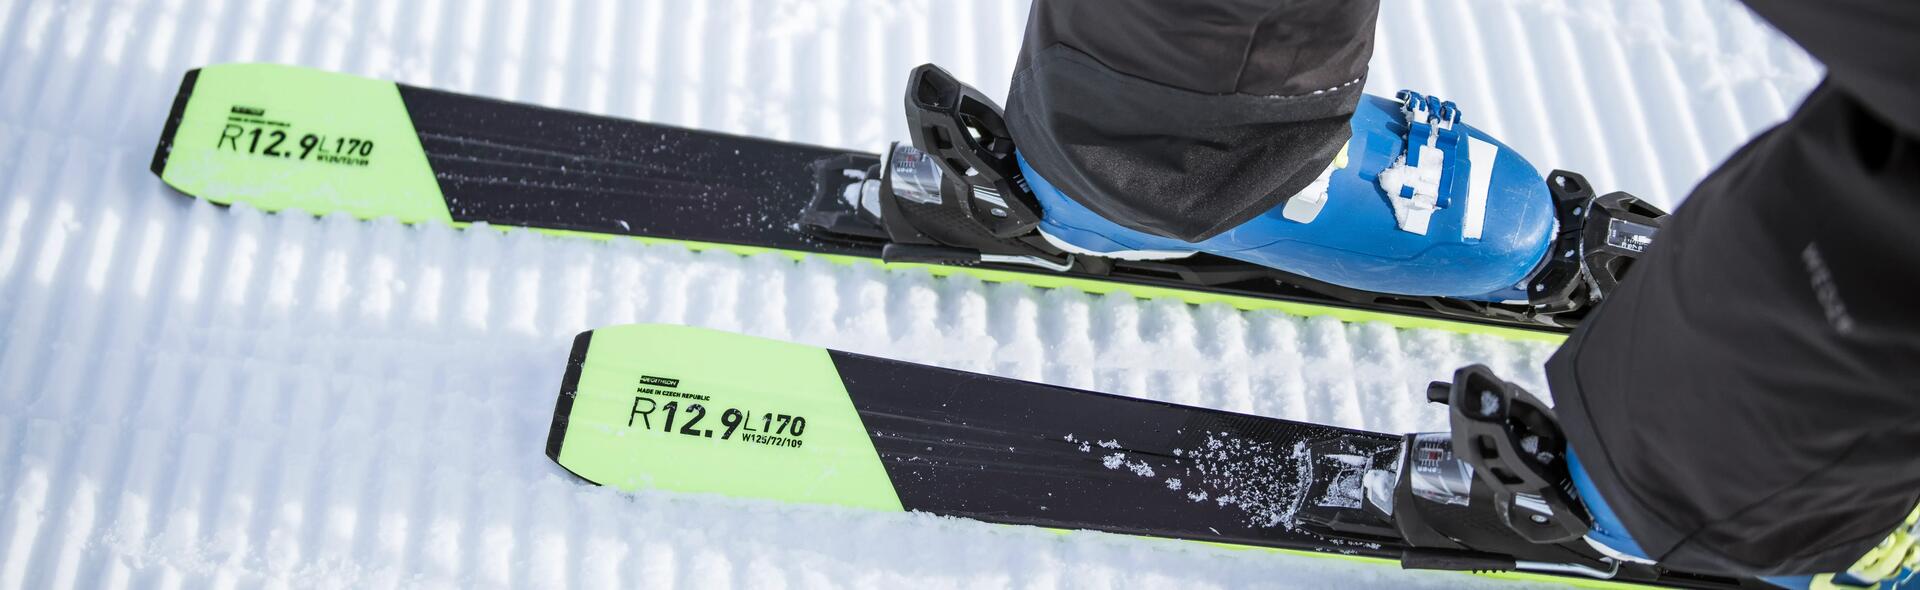 Wie stellt man die Bindungen der Ski richtig ein?